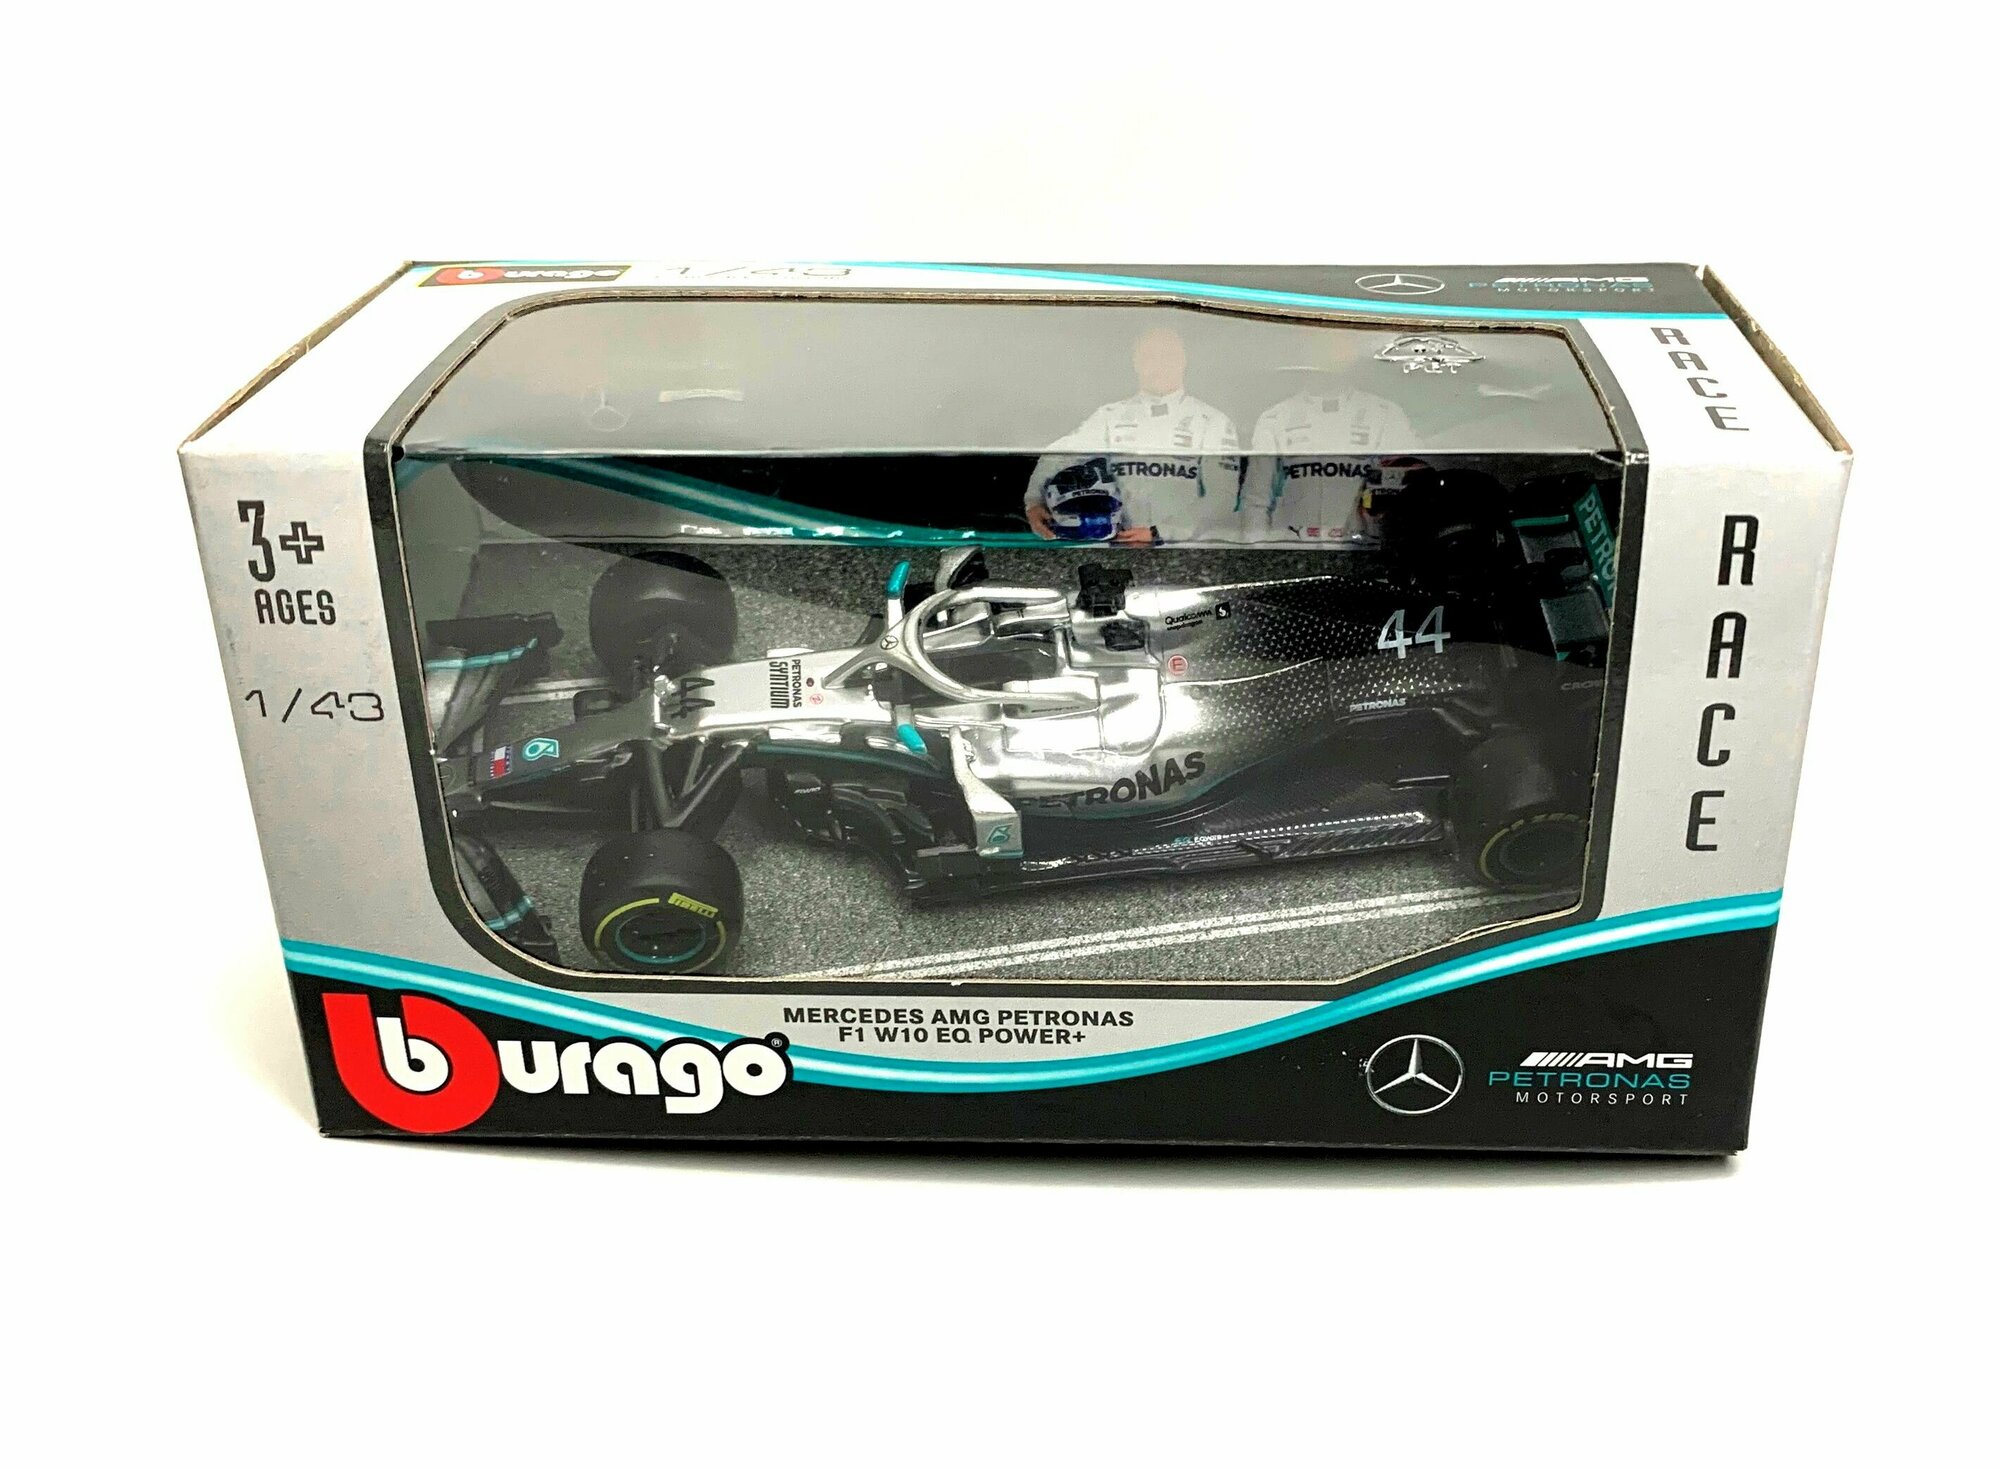 Металлическая коллекционная модель "Burago" болида Формулы-1 Mercedes W10 №44(пилот Льюис Хэмилтон)